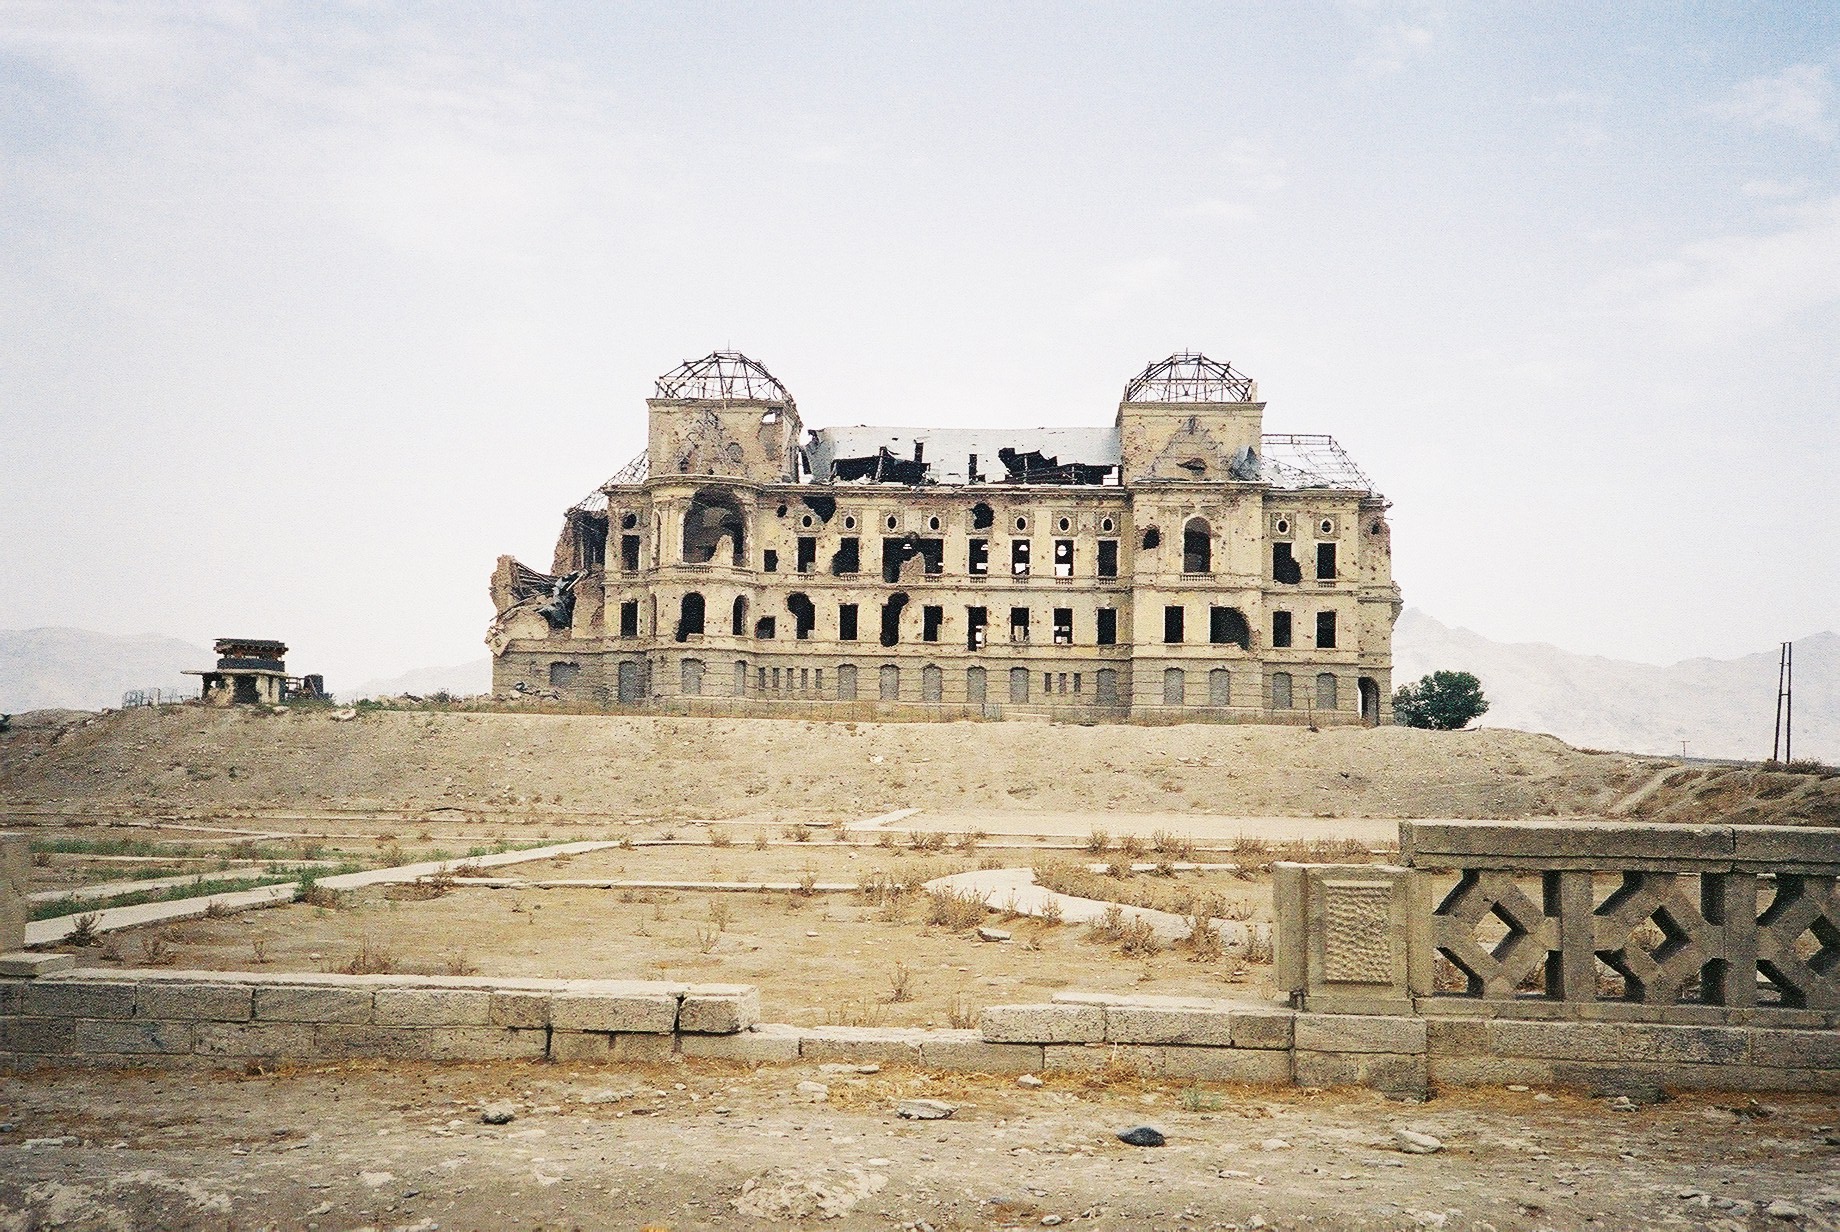 Darul_aman_palace_kabul_2006-02.JPG